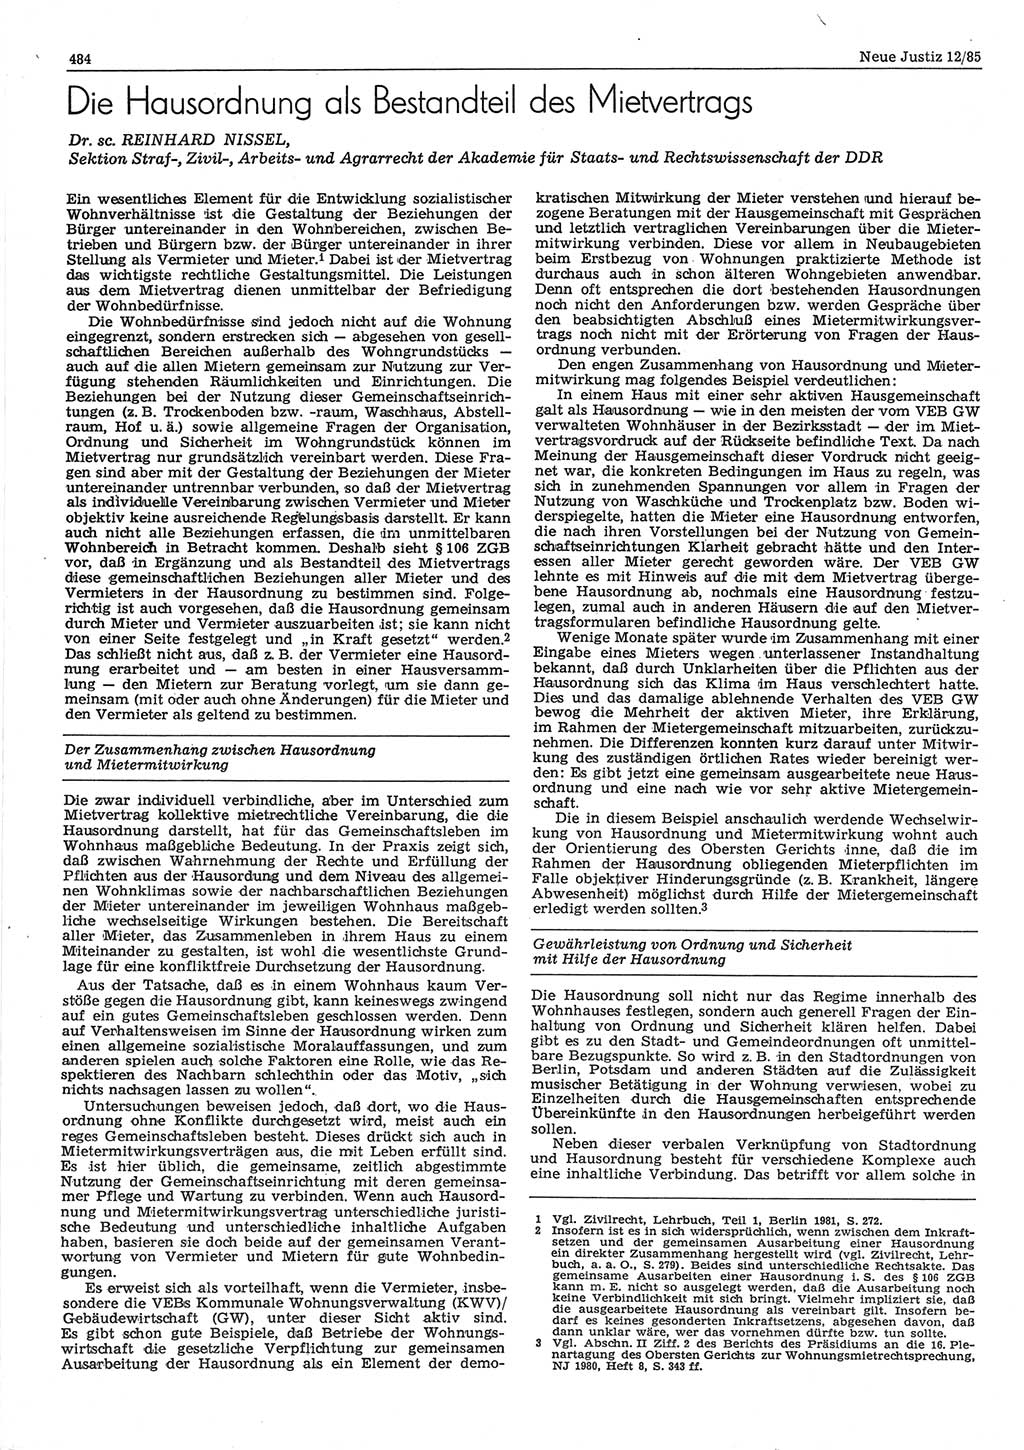 Neue Justiz (NJ), Zeitschrift für sozialistisches Recht und Gesetzlichkeit [Deutsche Demokratische Republik (DDR)], 39. Jahrgang 1985, Seite 484 (NJ DDR 1985, S. 484)